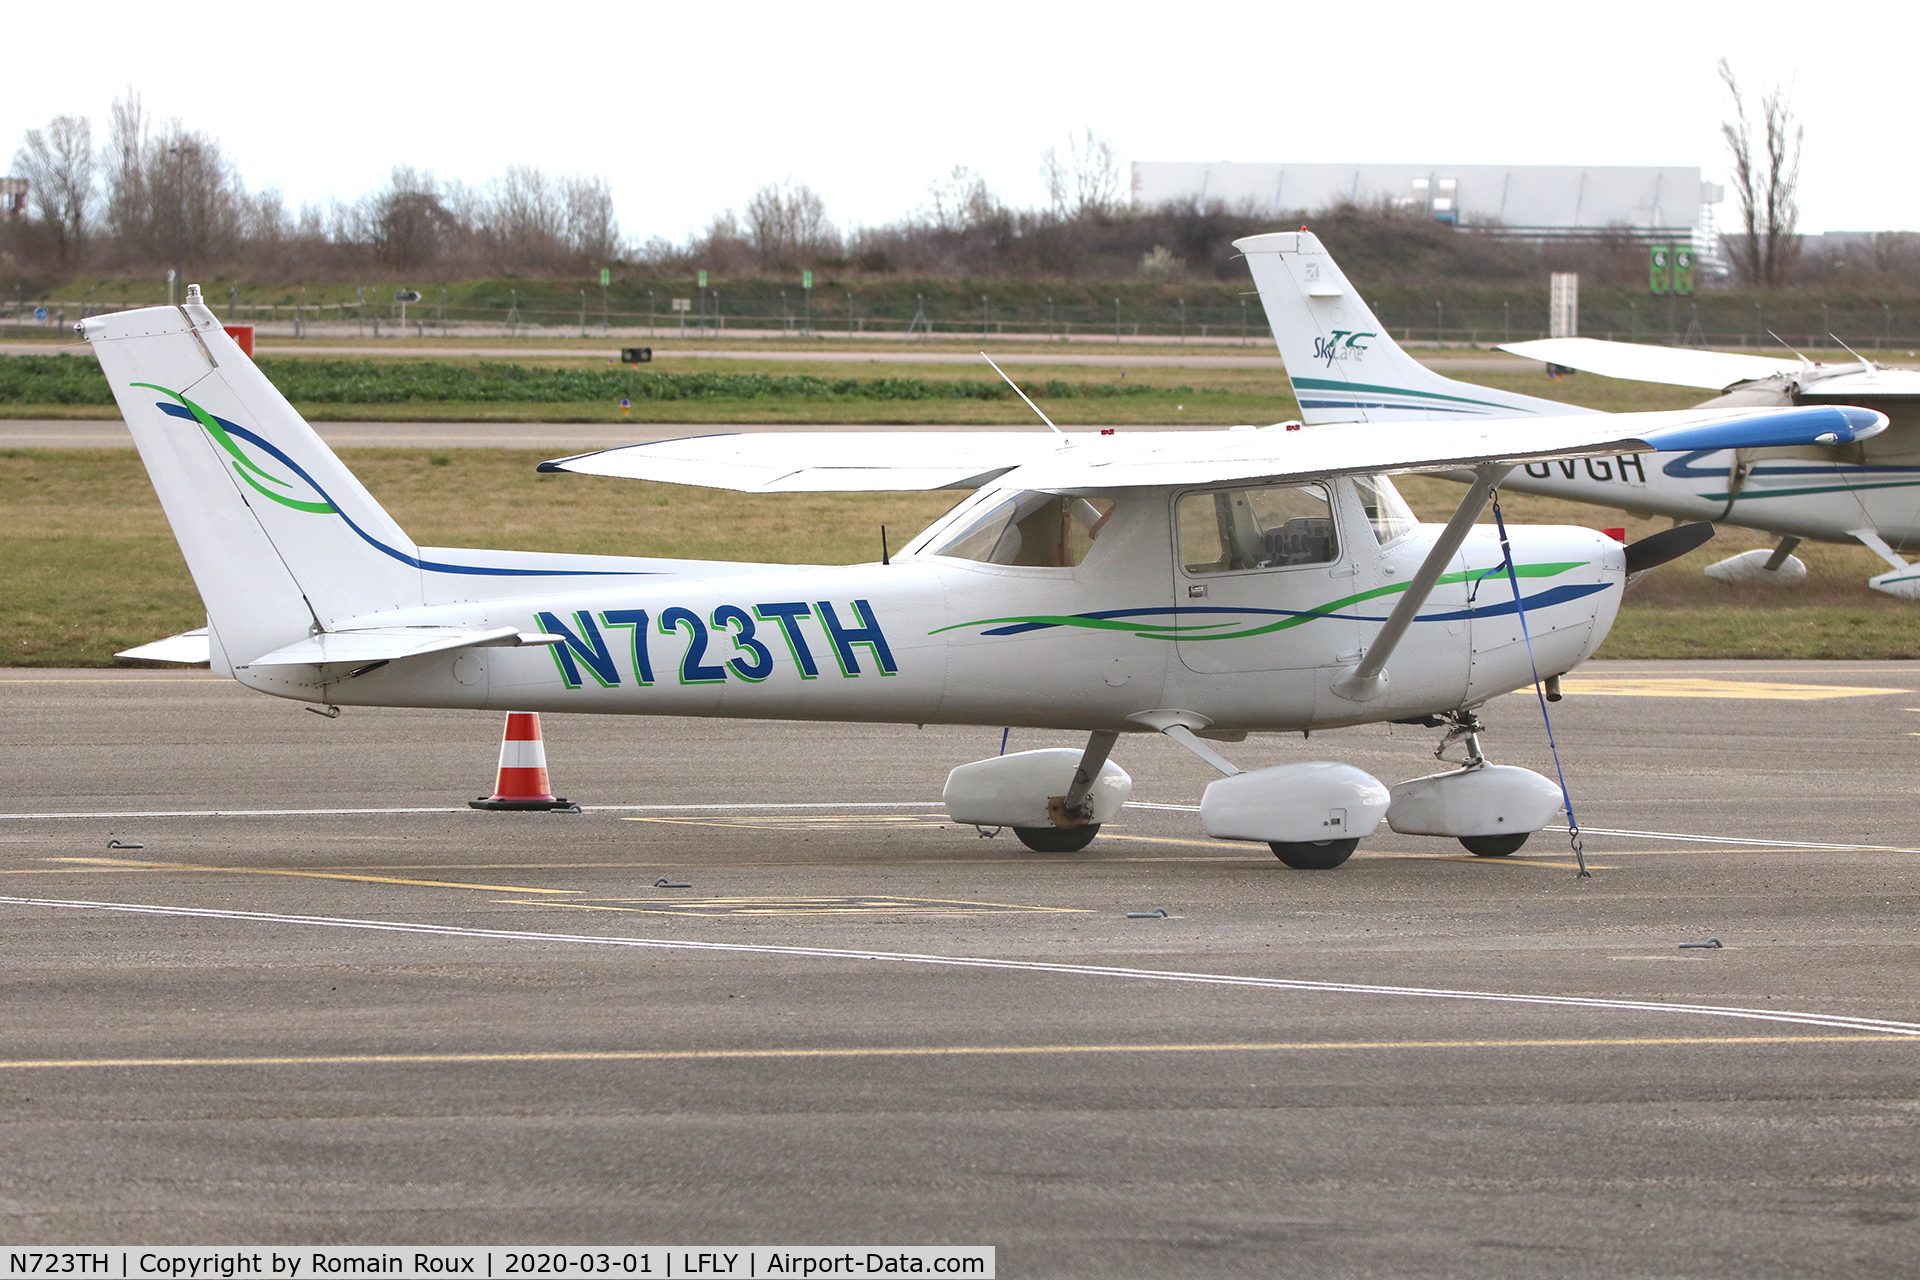 N723TH, 1977 Cessna 152 C/N 15281348, Pakred